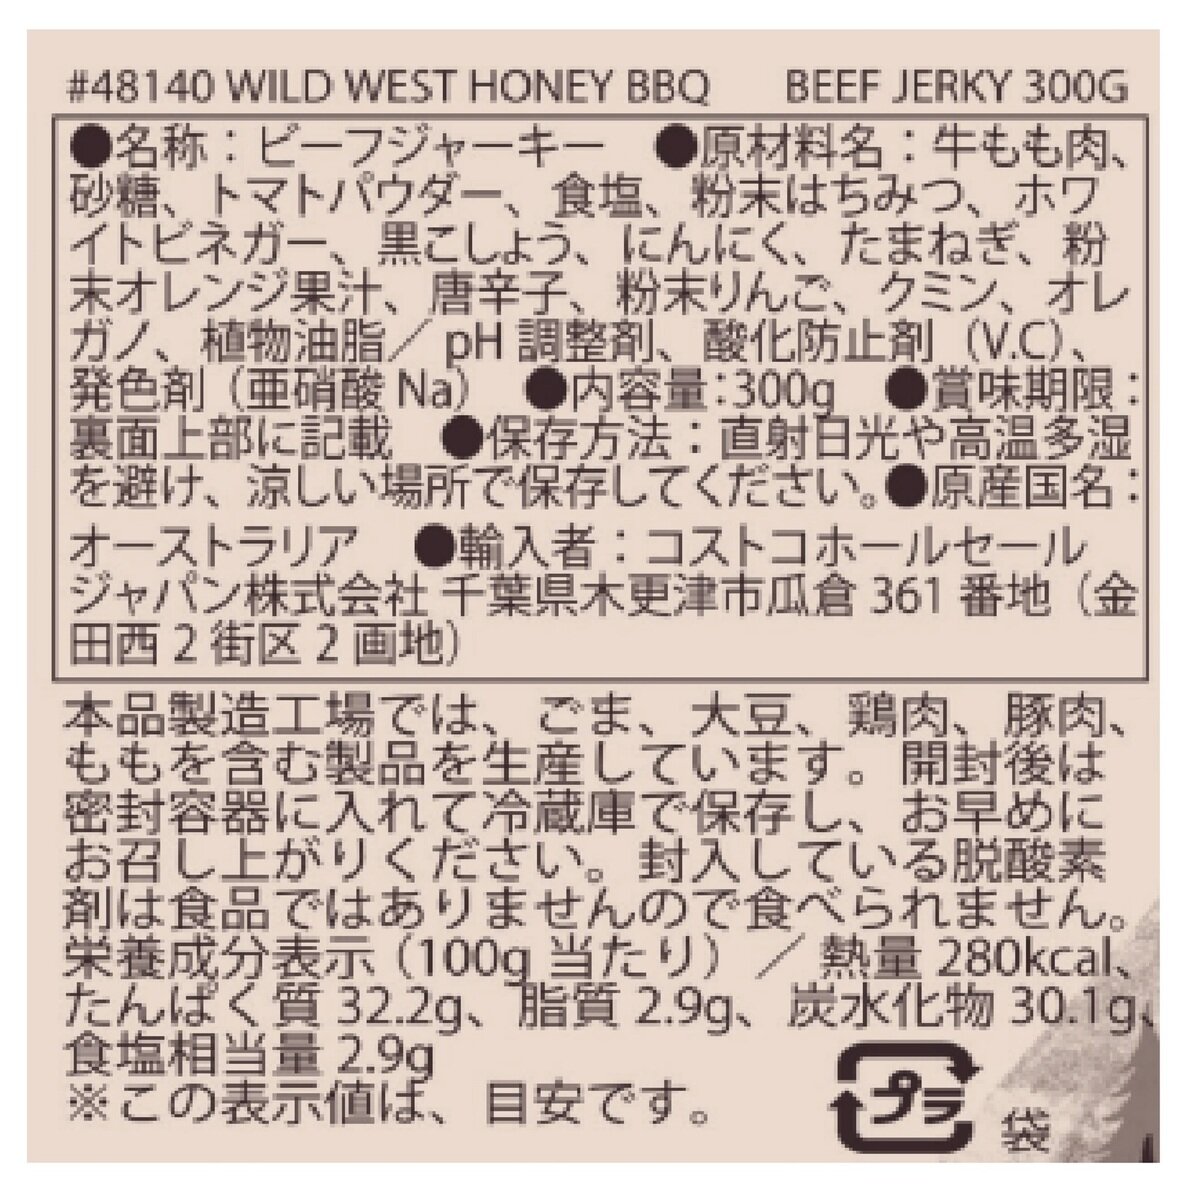 ハニーバーベキュー ビーフジャーキー 300g | Costco Japan